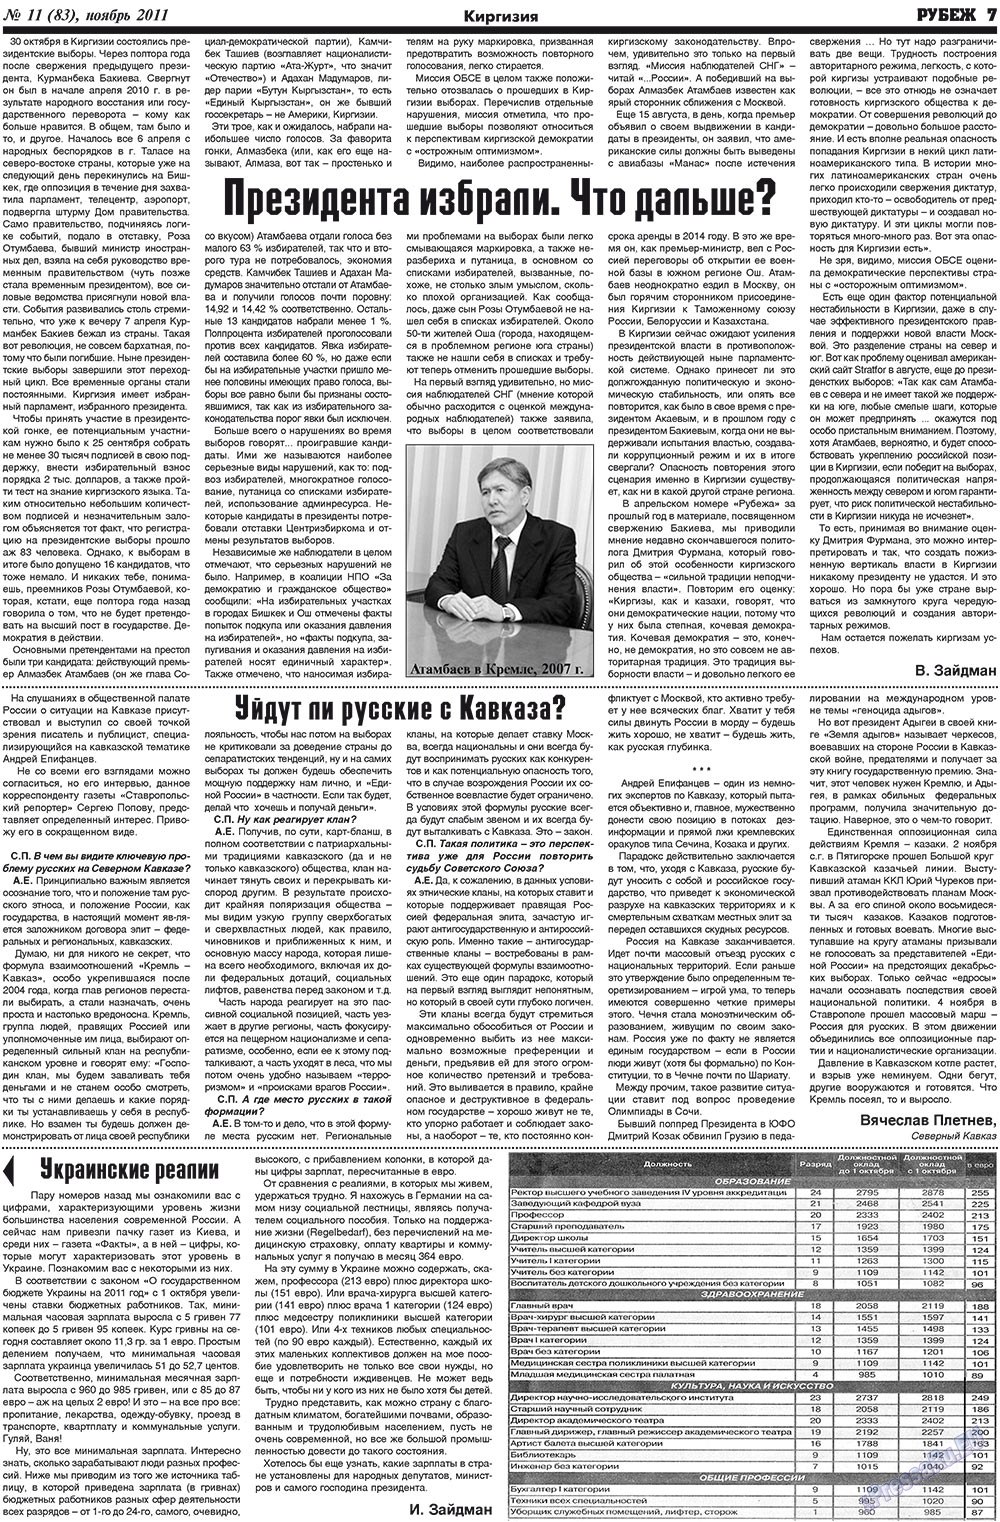 Рубеж (газета). 2011 год, номер 11, стр. 7